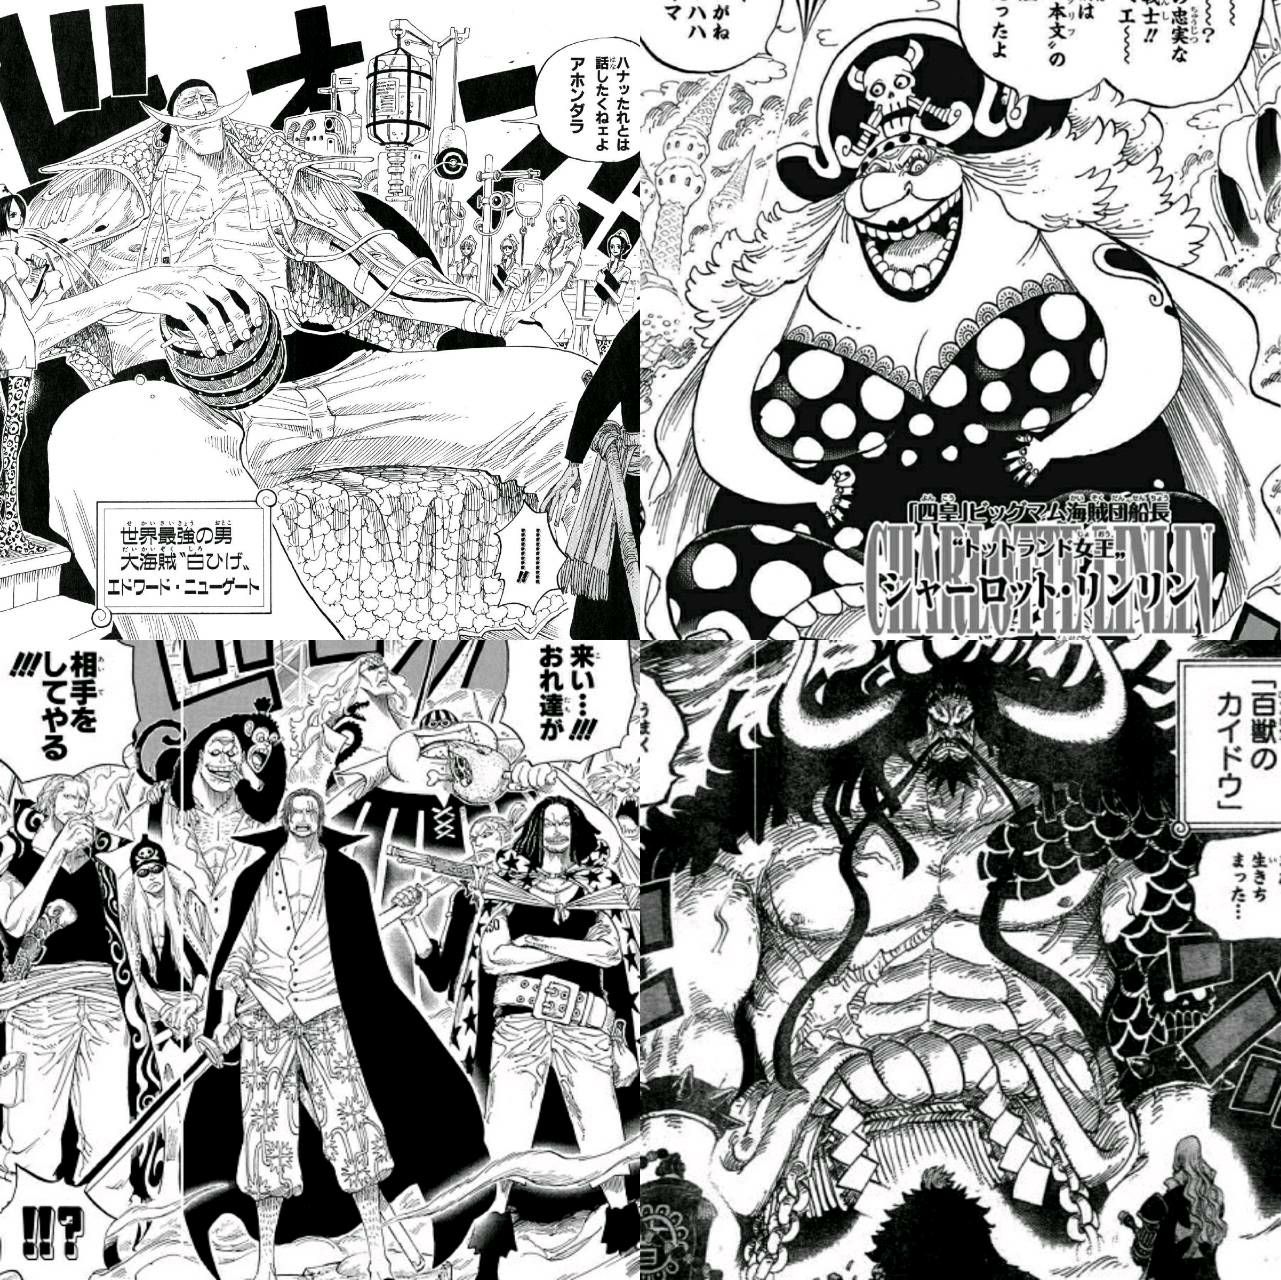 One Piece ワンピース に登場する海賊 四皇の異名まとめ 2 4 Renote リノート